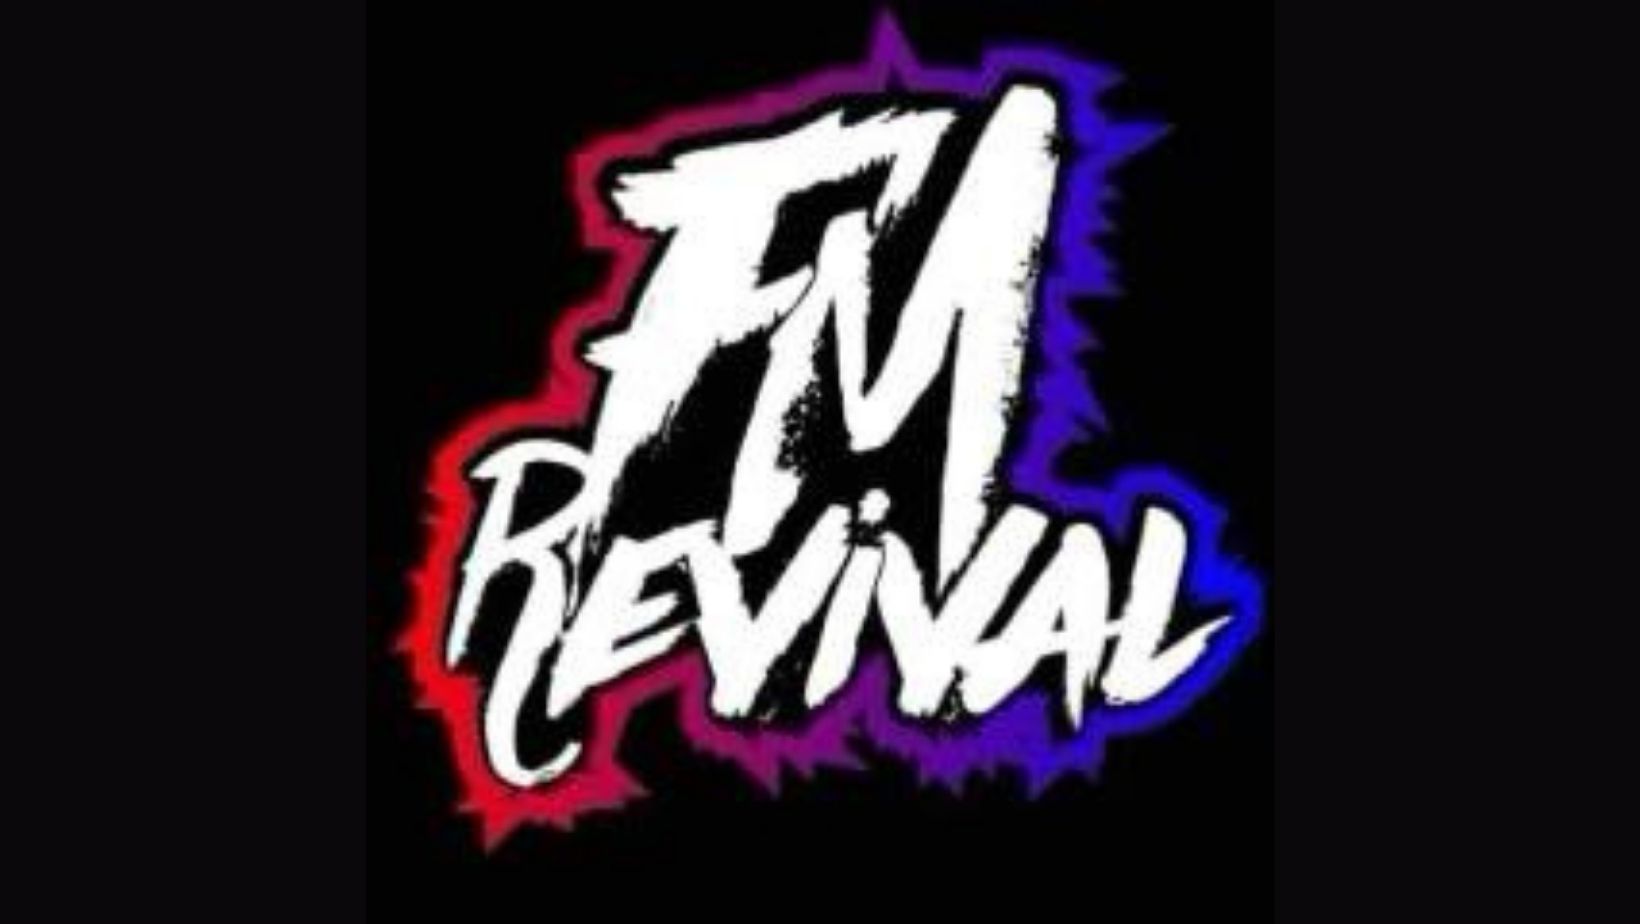 FM Revival